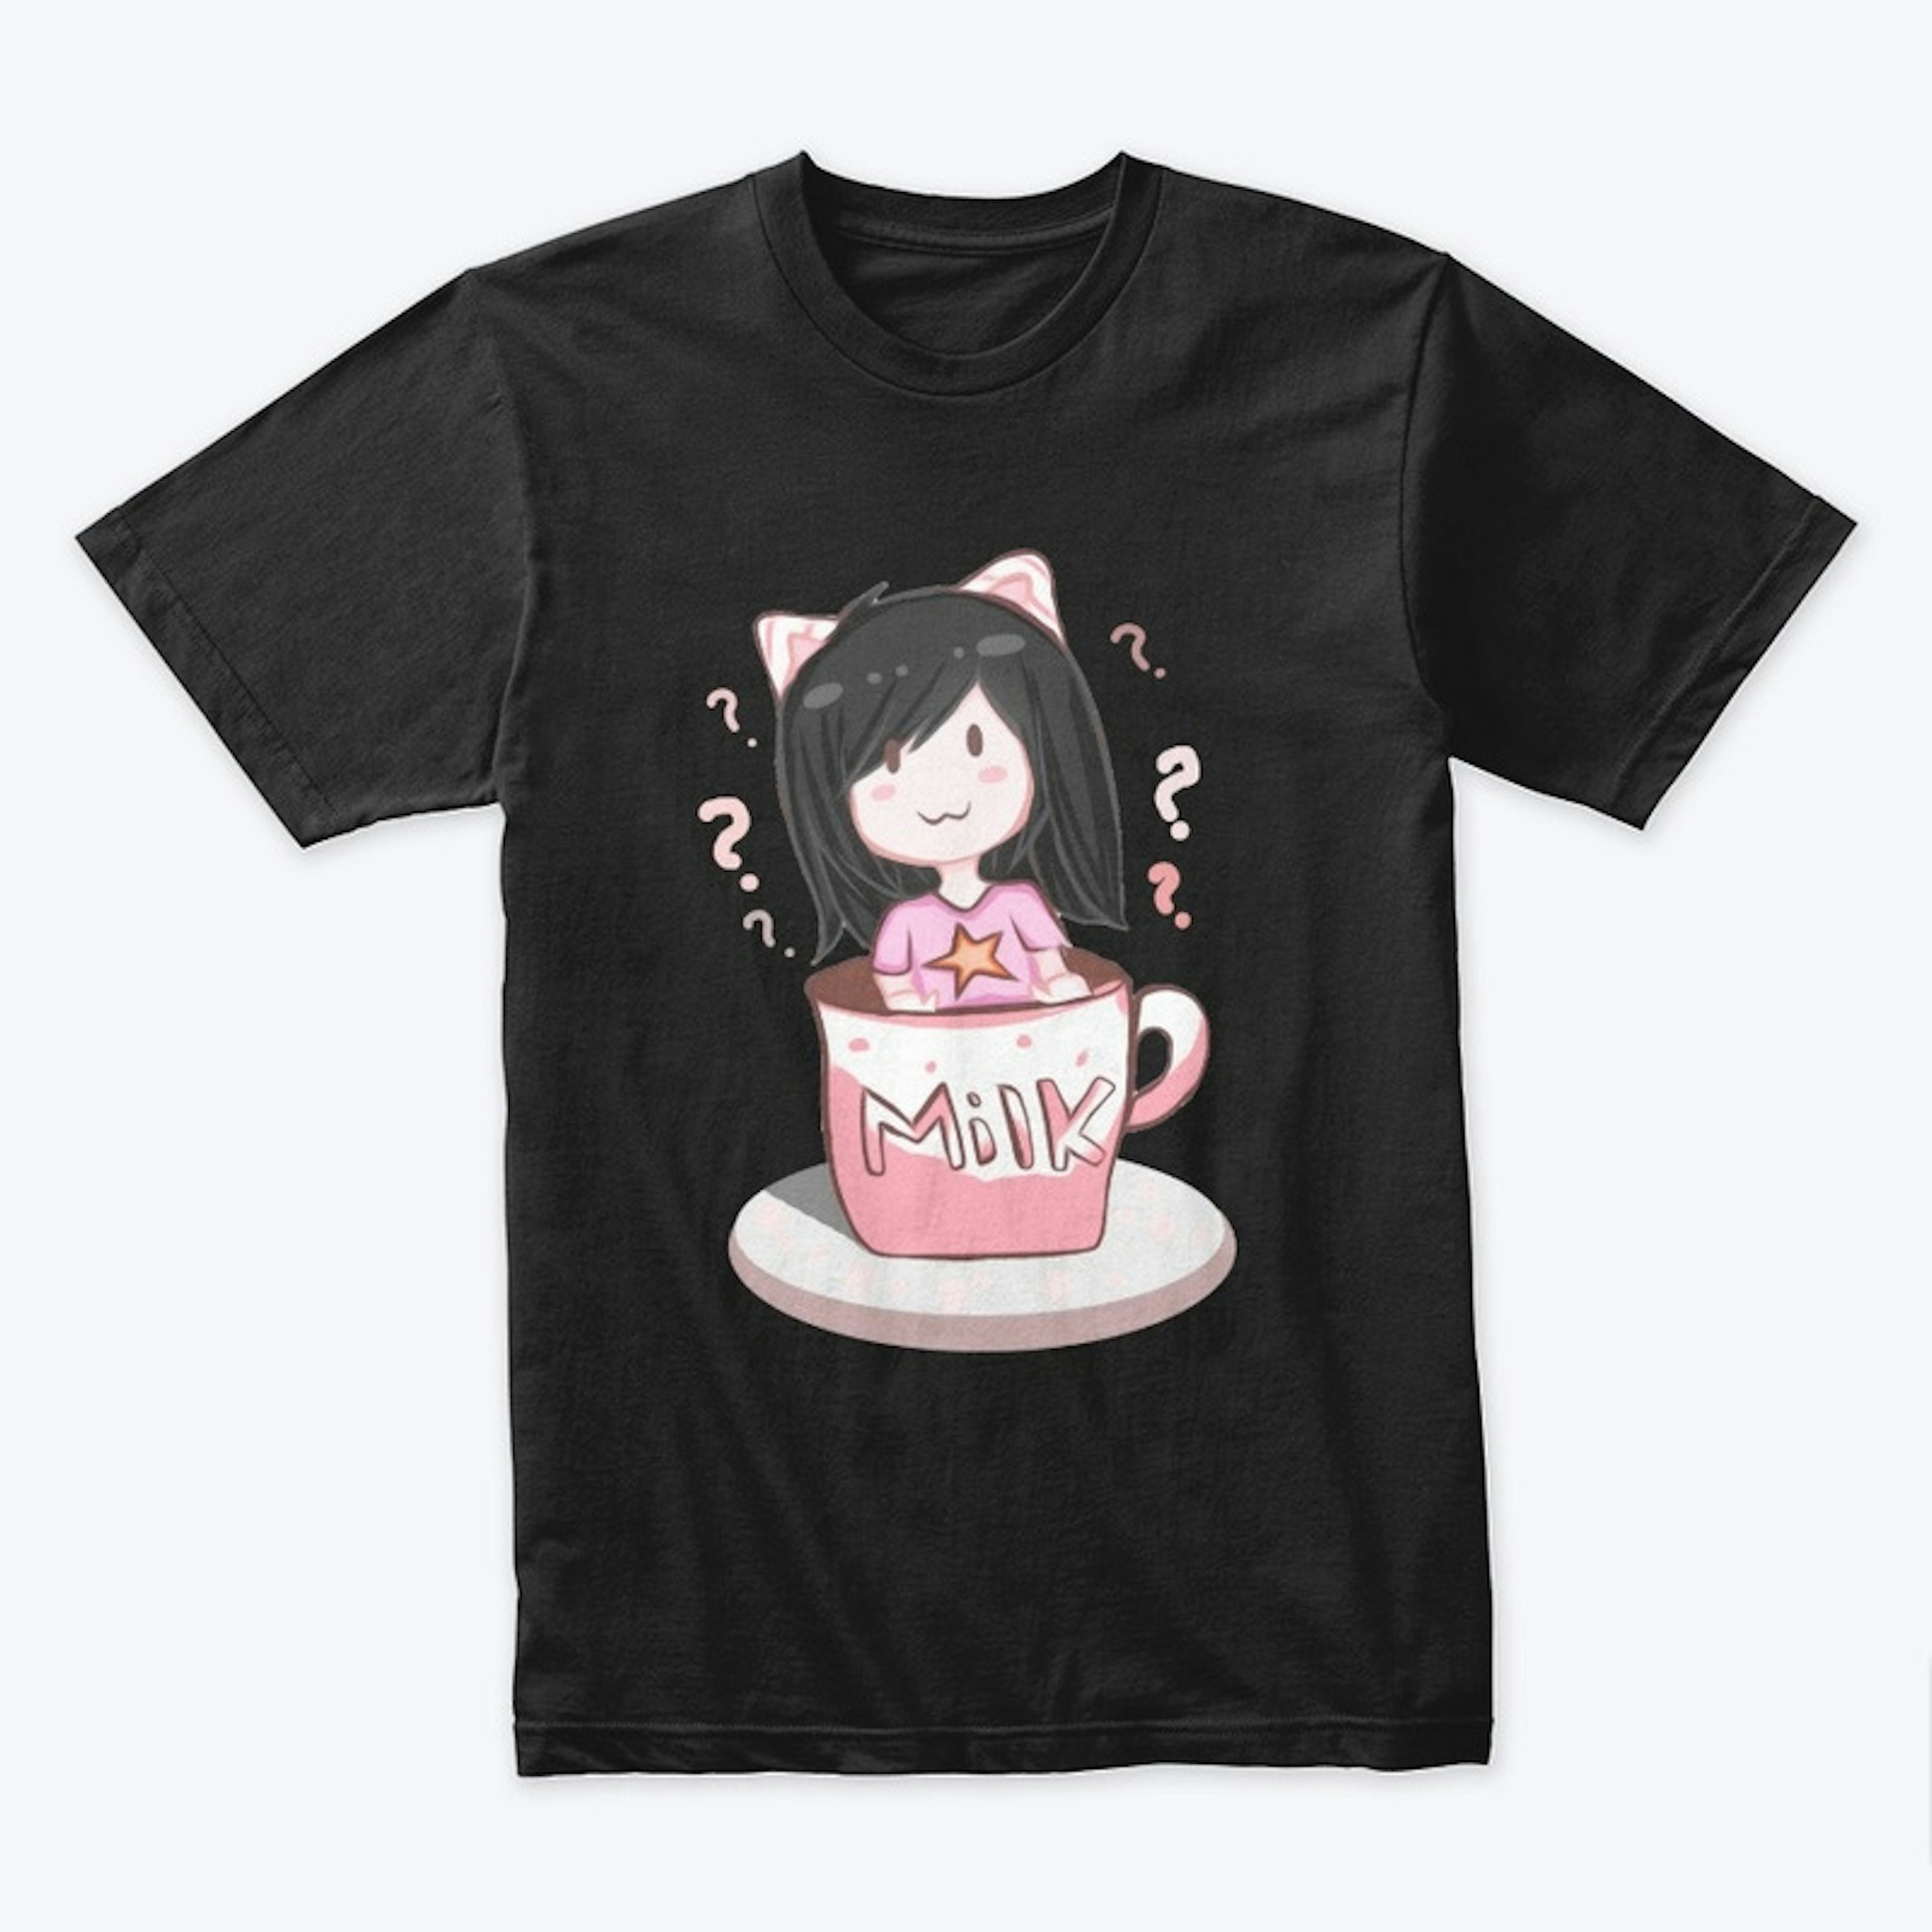 Neko Cherry In A Cup? T-Shirt!